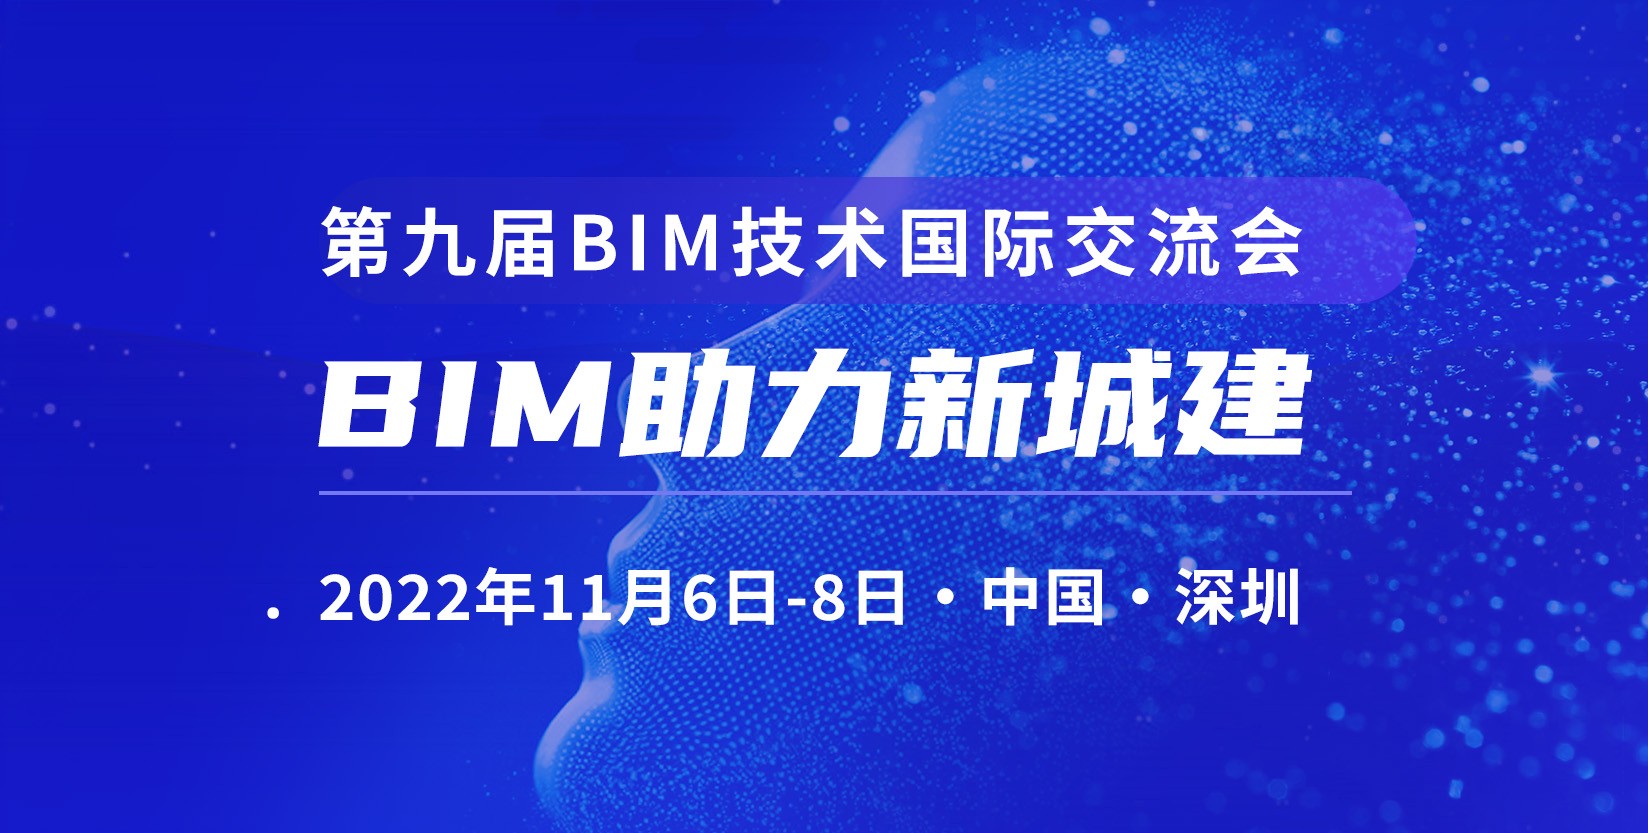 交流会预告 | 椭圆方程董事长受邀参与第九届BIM技术国际交流会